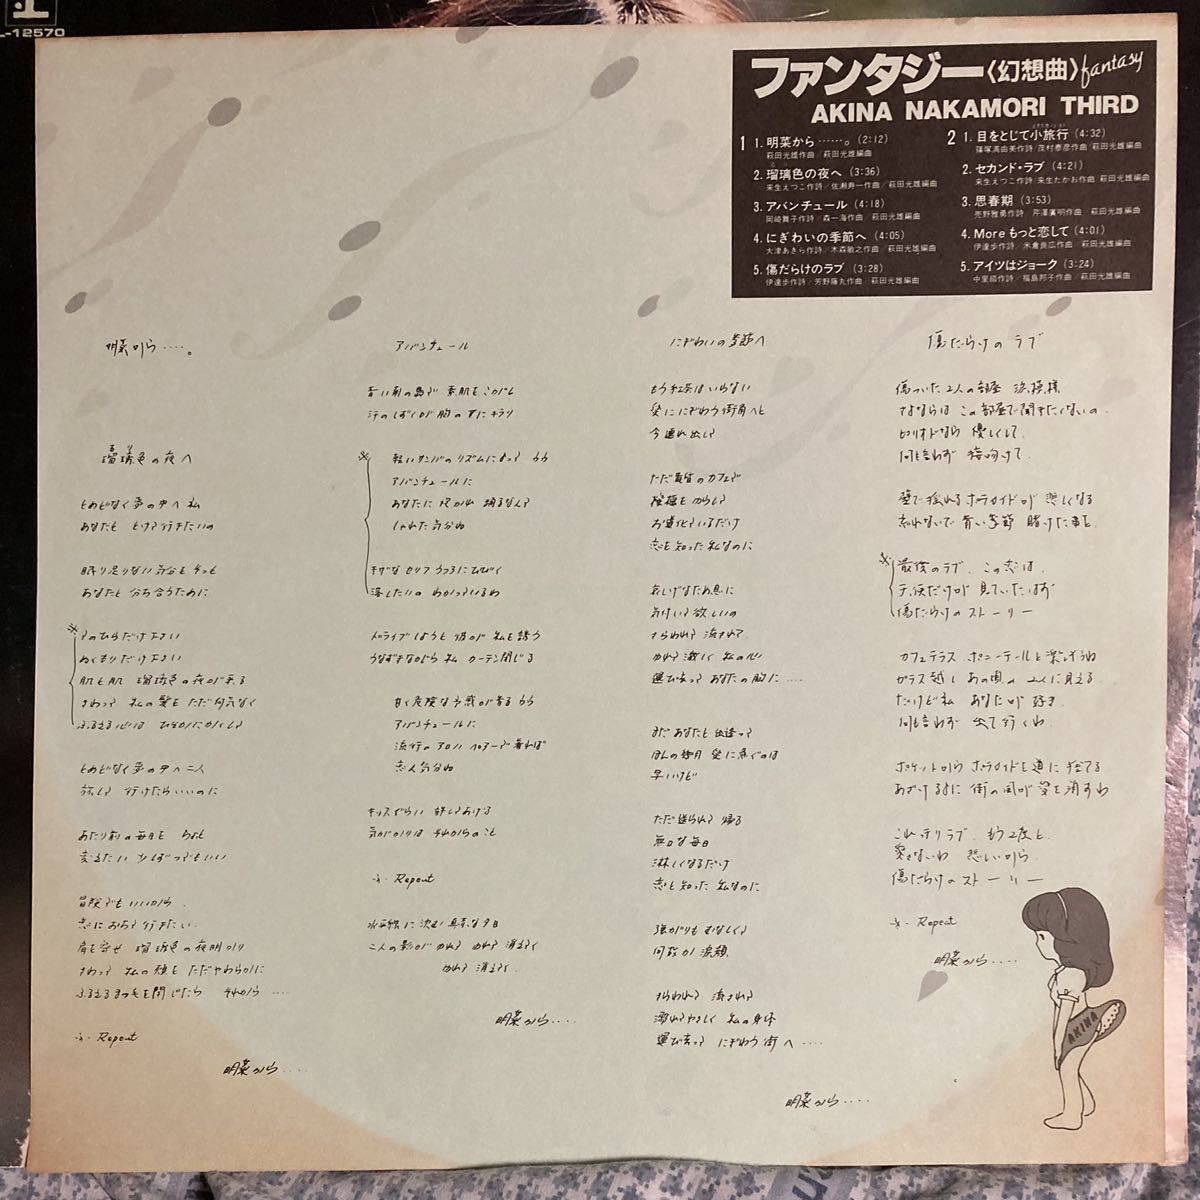 中森明菜 LP レコード ファンタジー 3rd セカンド・ラブ 歌姫 昭和